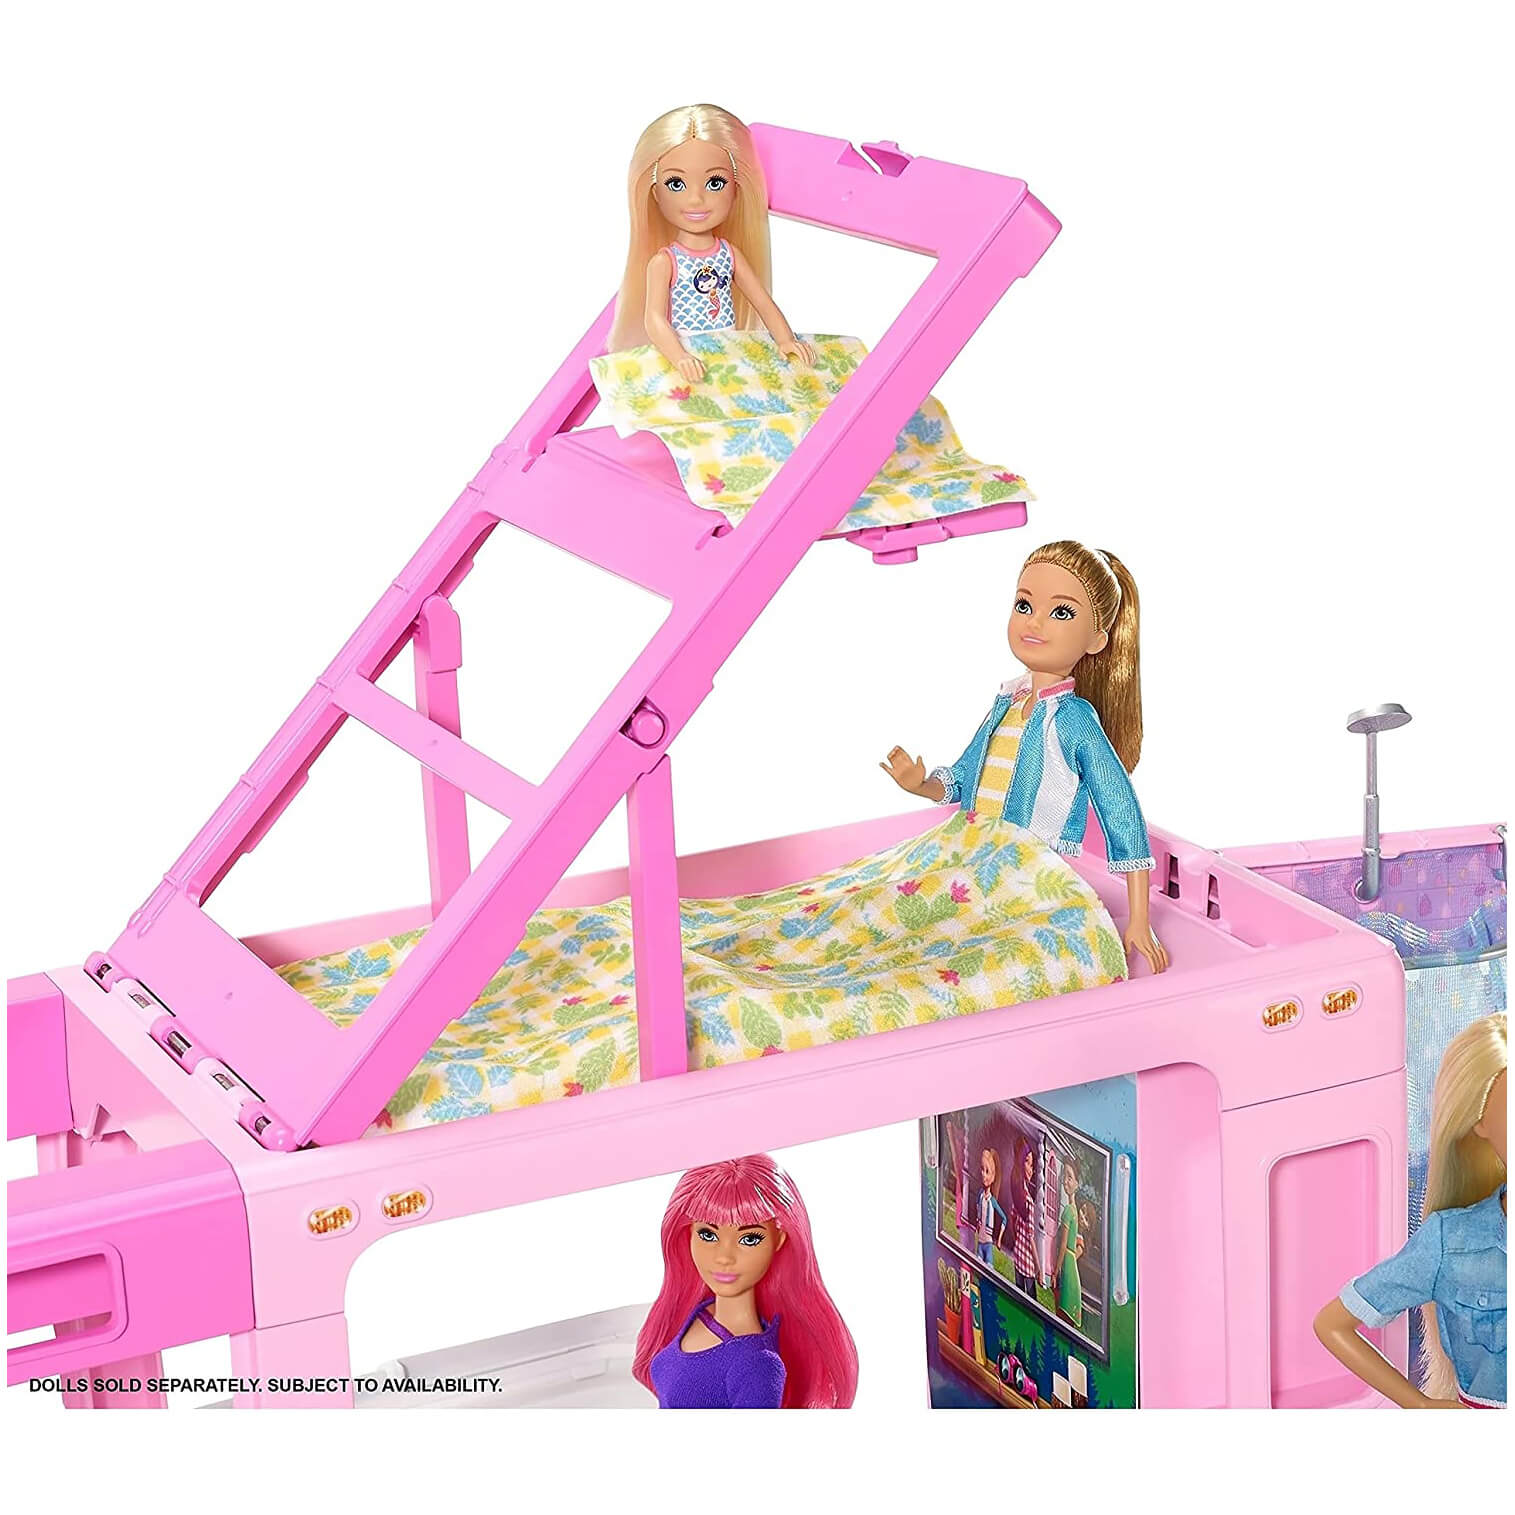 Barbie 3-in-1 Dreamcamper Playset